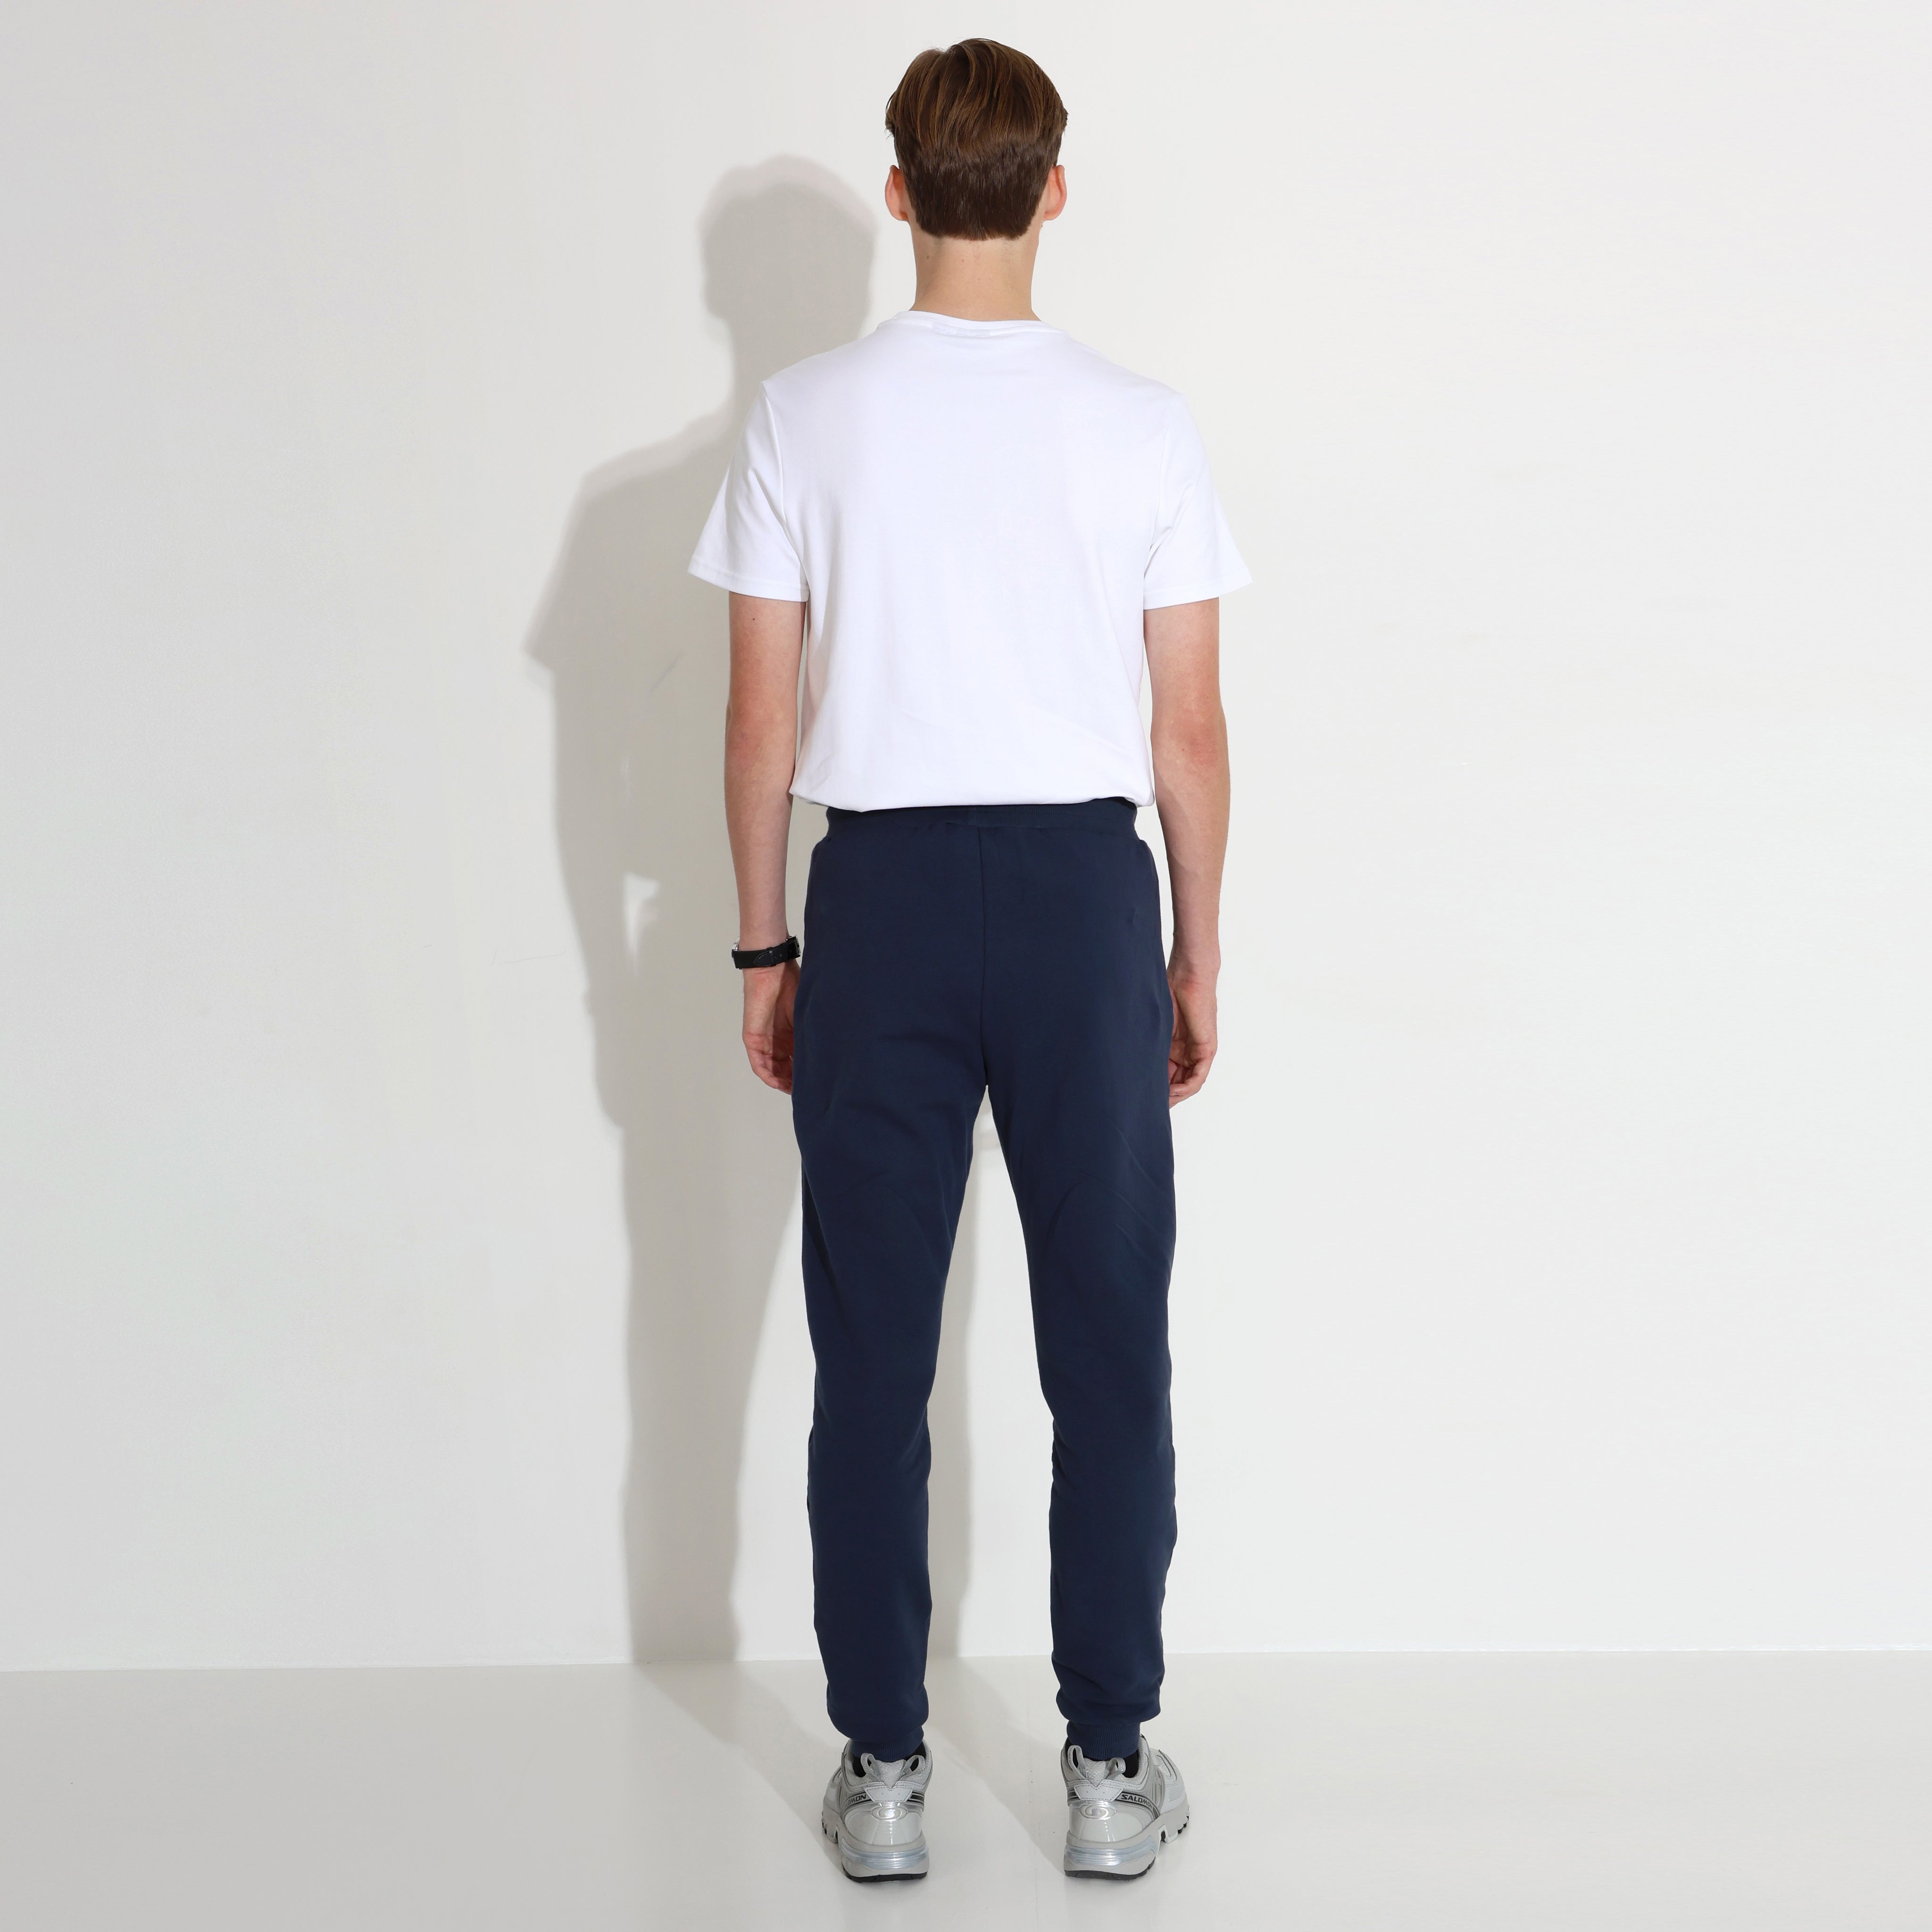 Men's clothing | Universal Comfort Noel Sweatpants (Navy) | Carlheim